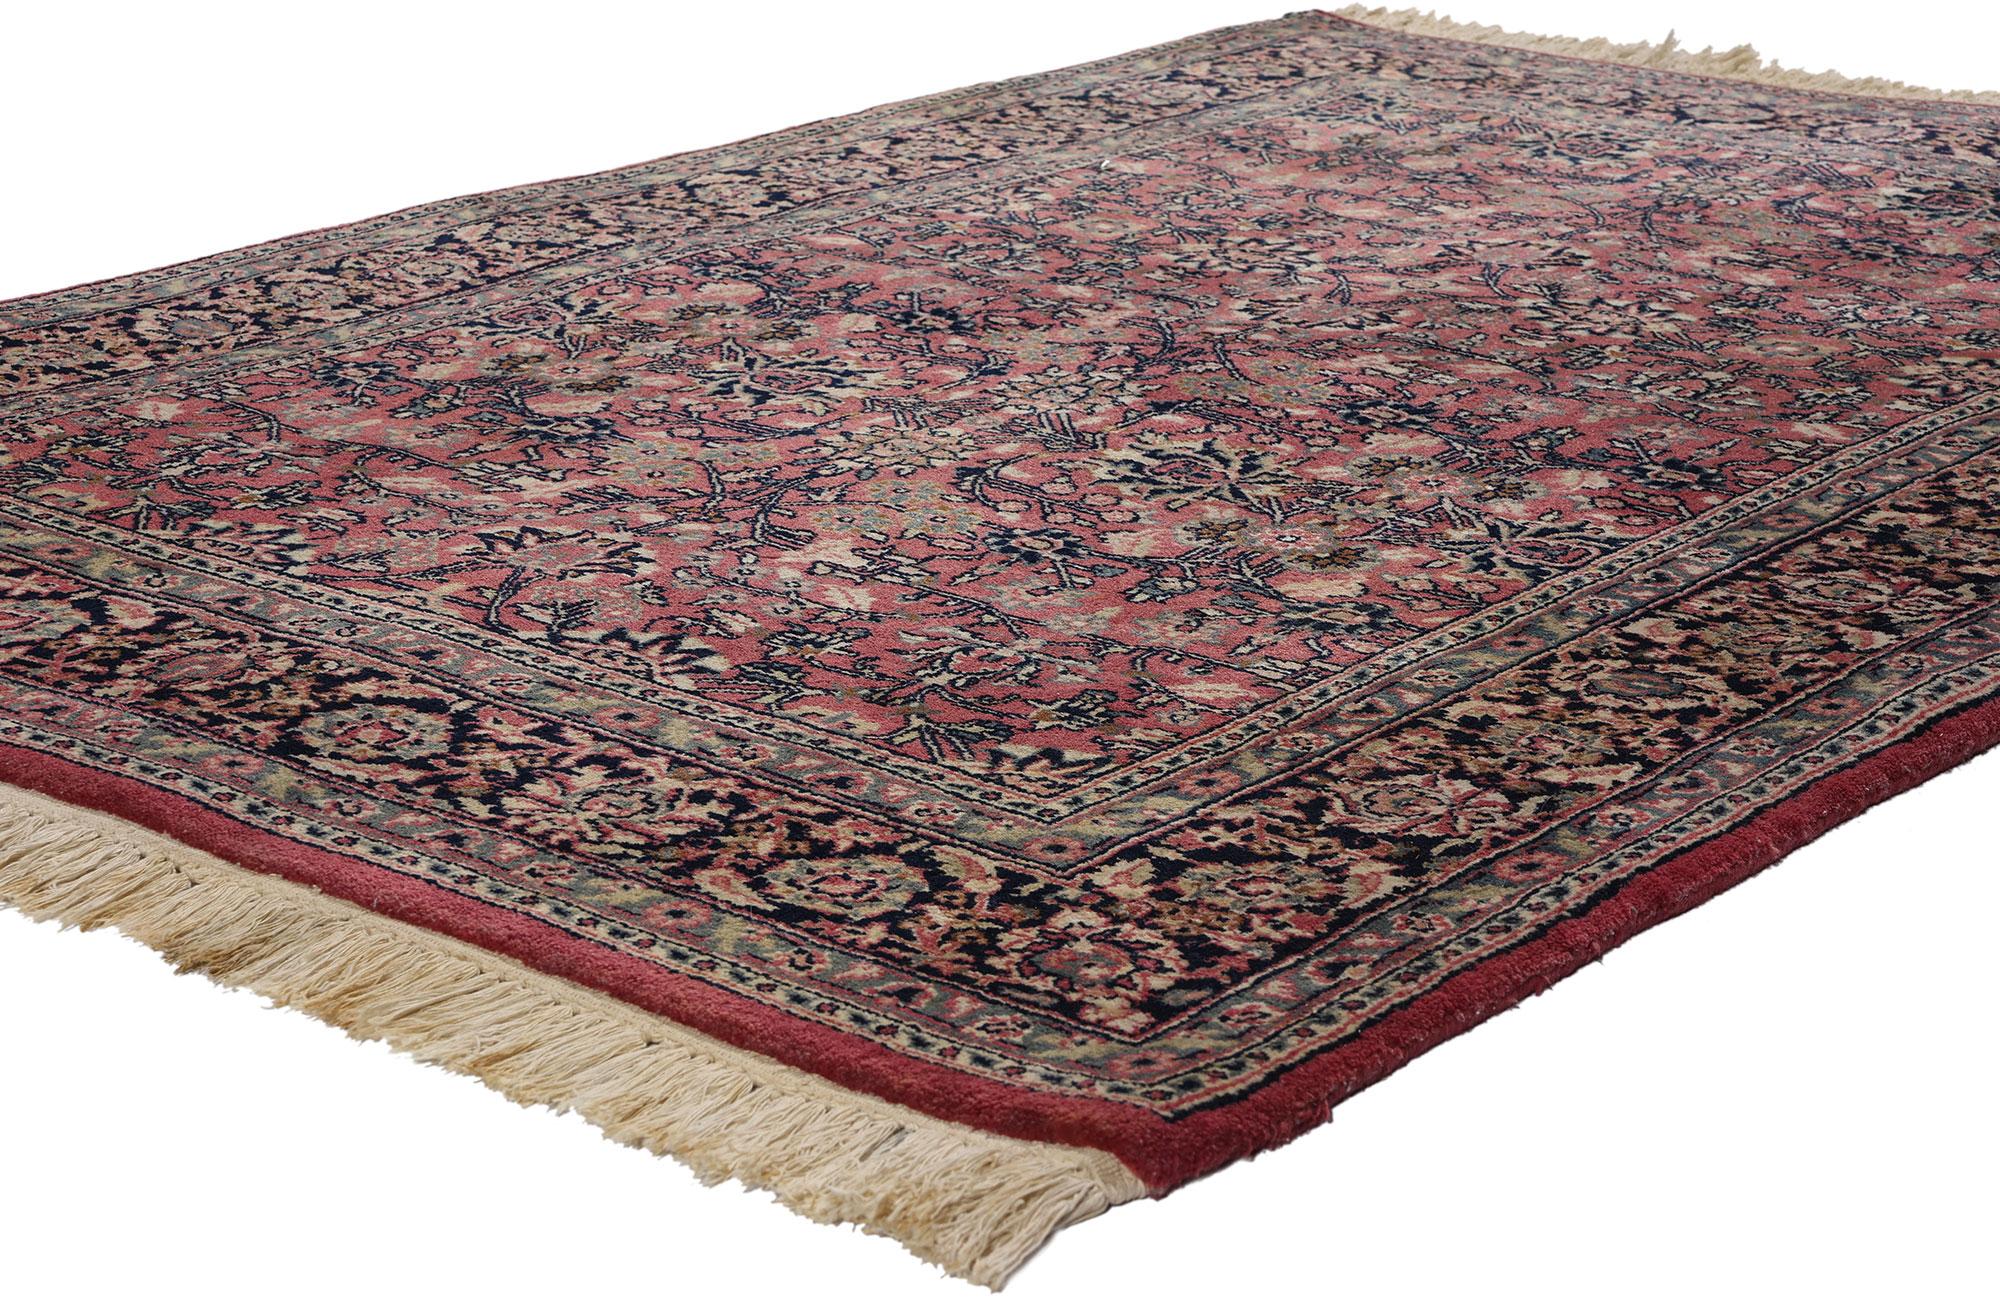 78693 Tapis persan Bijar rouge Vintage, 04'01 x 06'00. Les tapis persans Bijar sont des tapis tissés de manière complexe, originaires de la ville de Bijar, dans l'ouest de l'Iran. Ils sont réputés pour leur durabilité et leur robustesse. Fabriqués